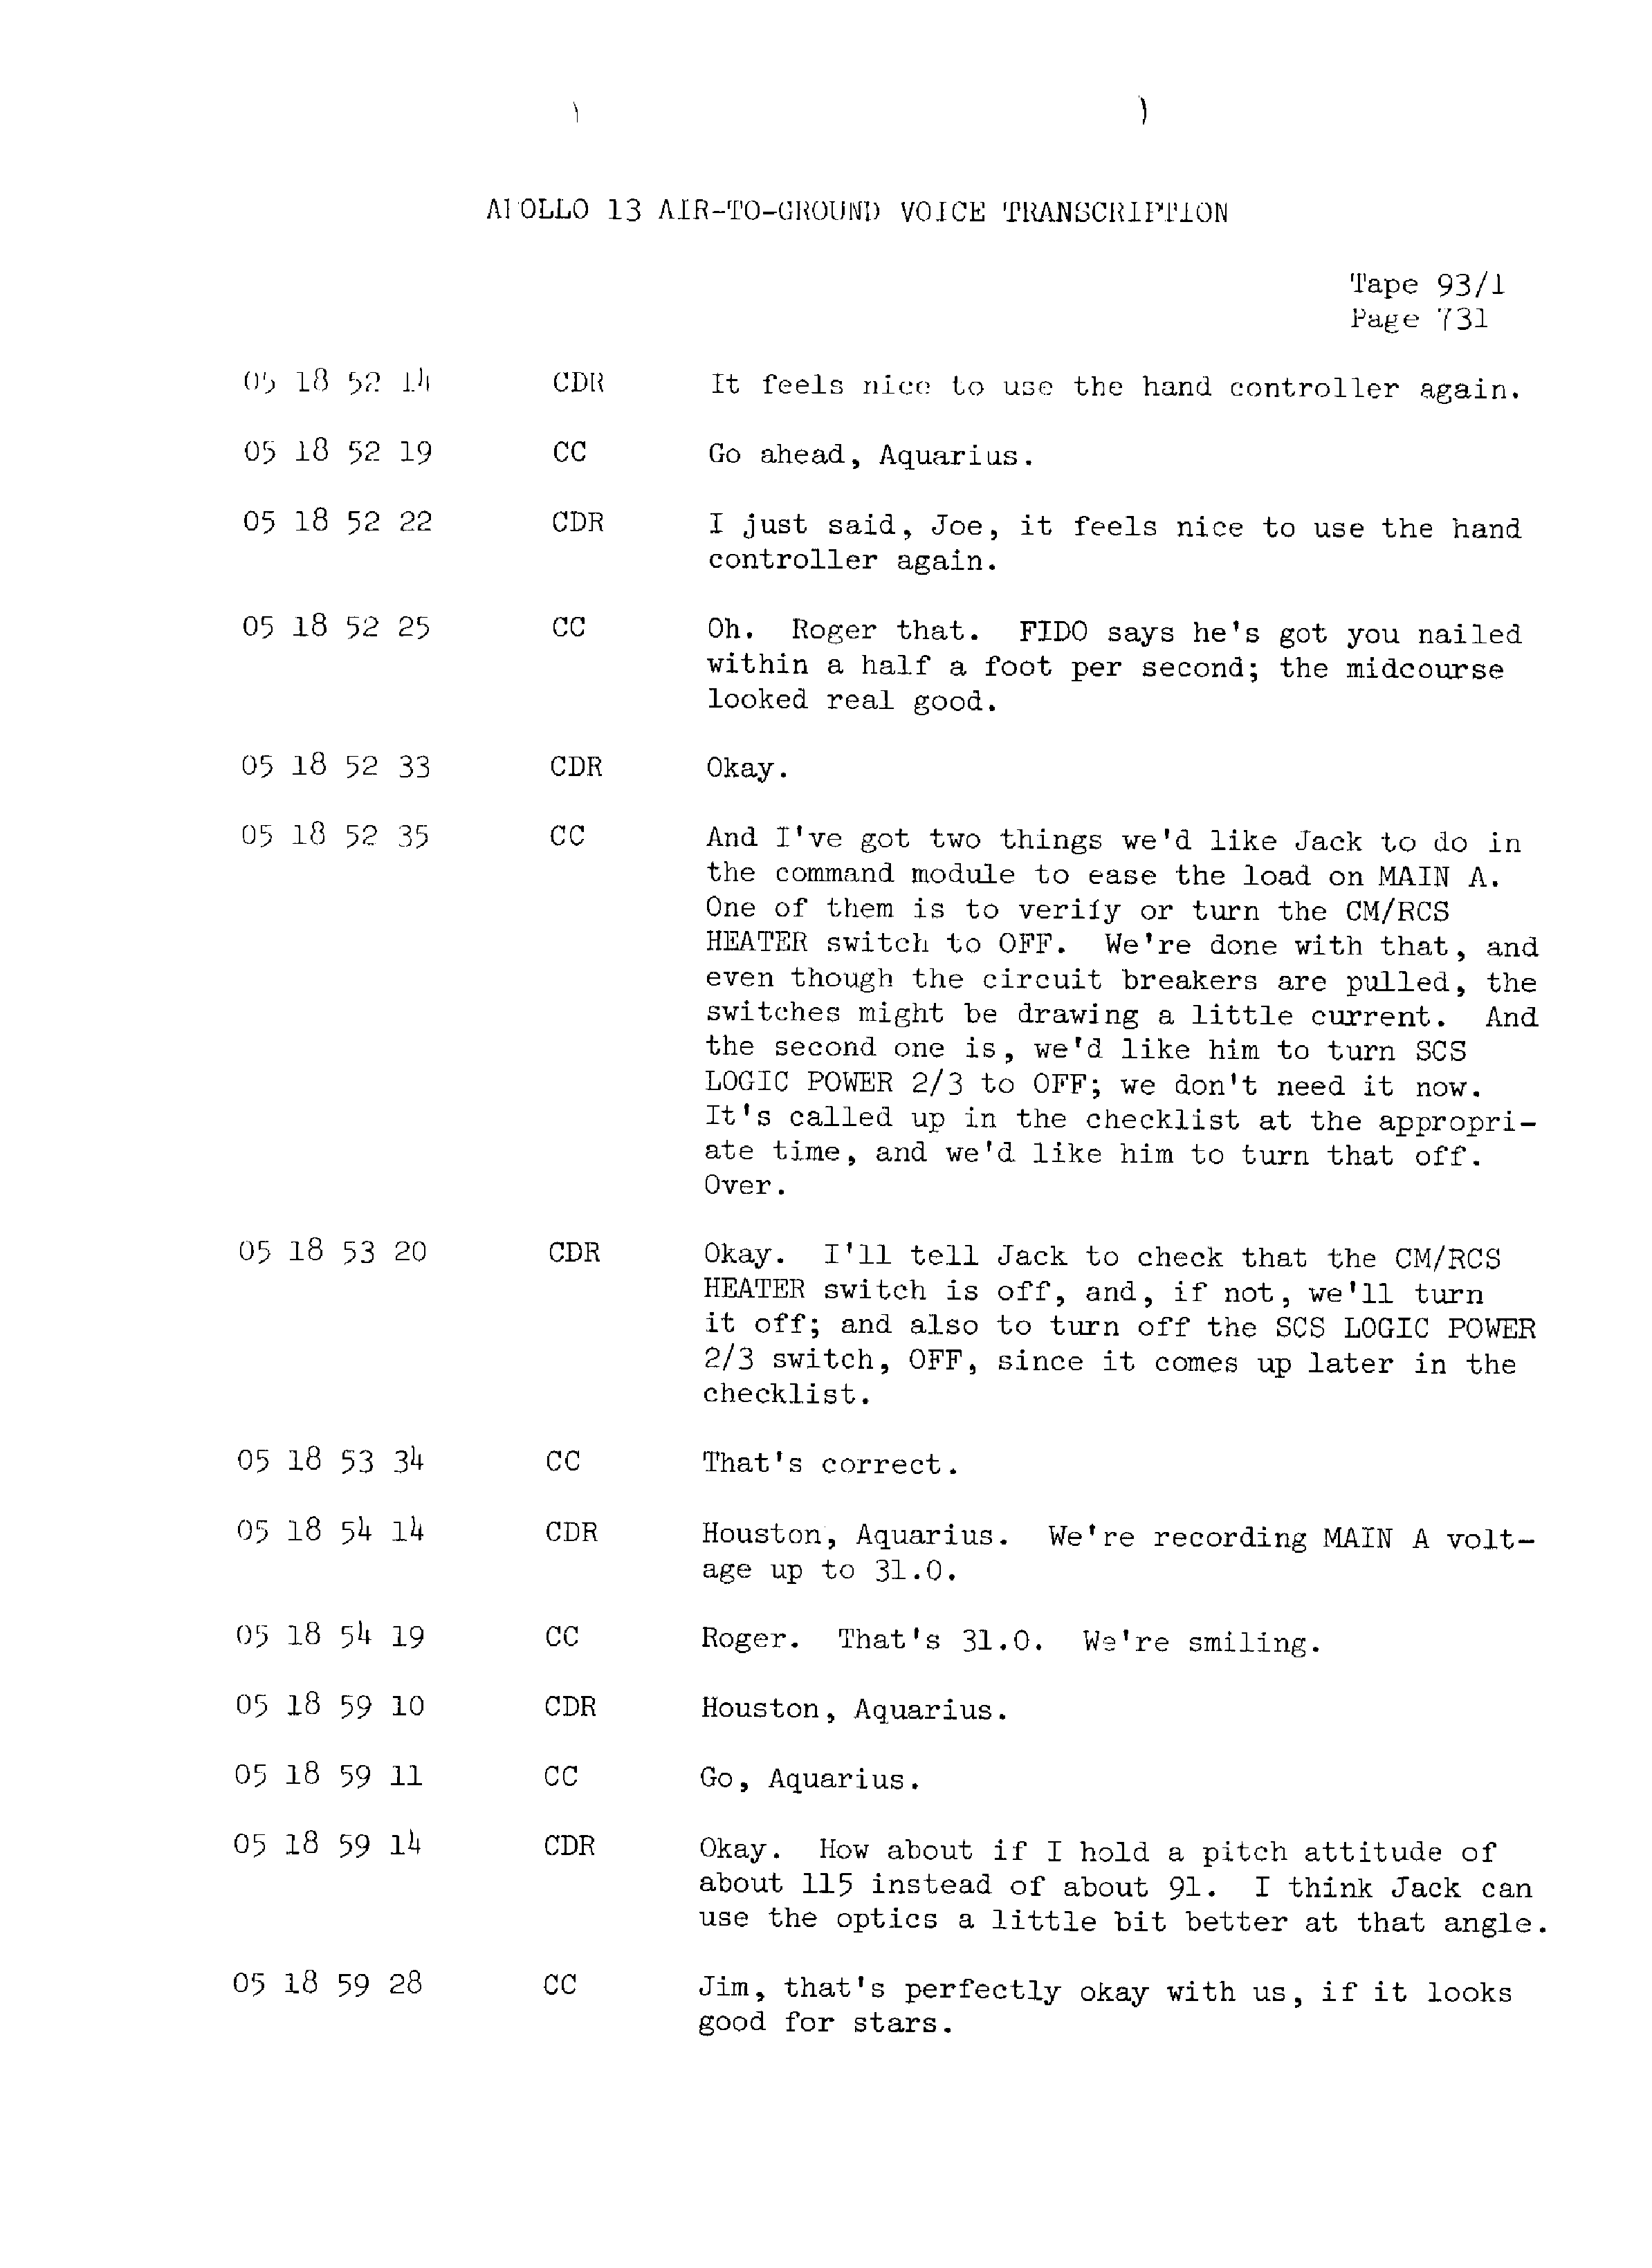 Page 738 of Apollo 13’s original transcript